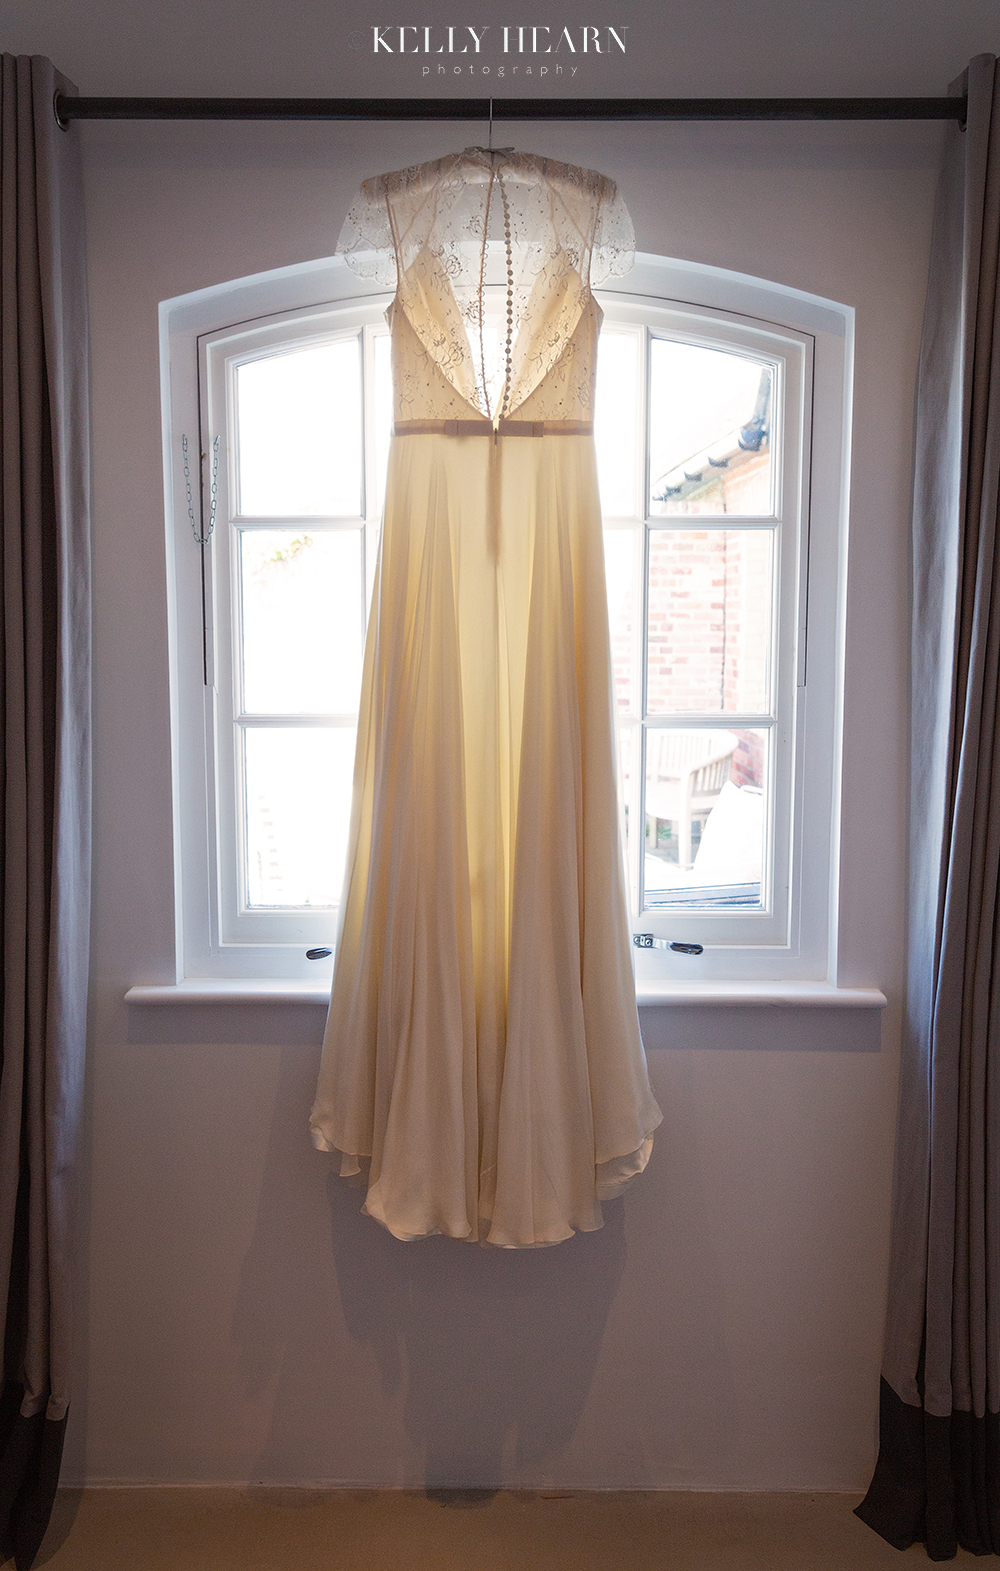 LEN_wedding-dress-hanging-at-window.jpg#asset:2586